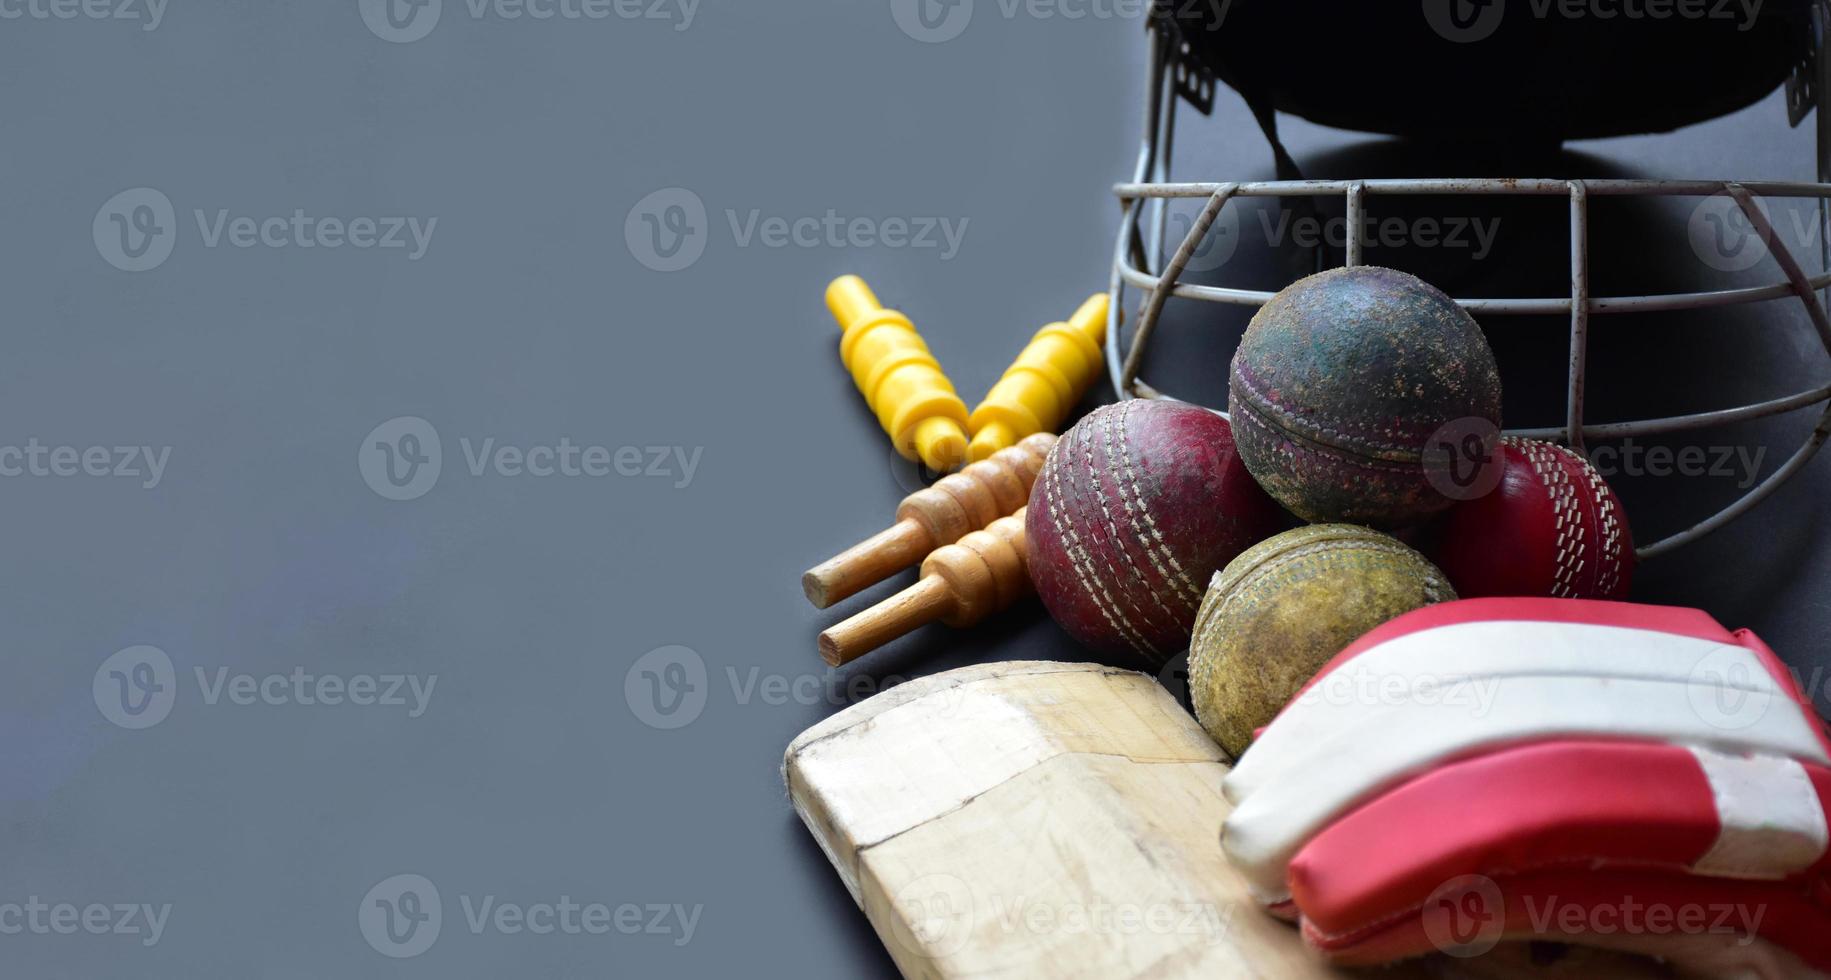 oude trainingscricket-sportuitrusting op donkere vloer, leren bal, wickets, helm en houten vleermuis, zachte en selectieve focus, traditionele cricketsportliefhebbers over de hele wereld. foto